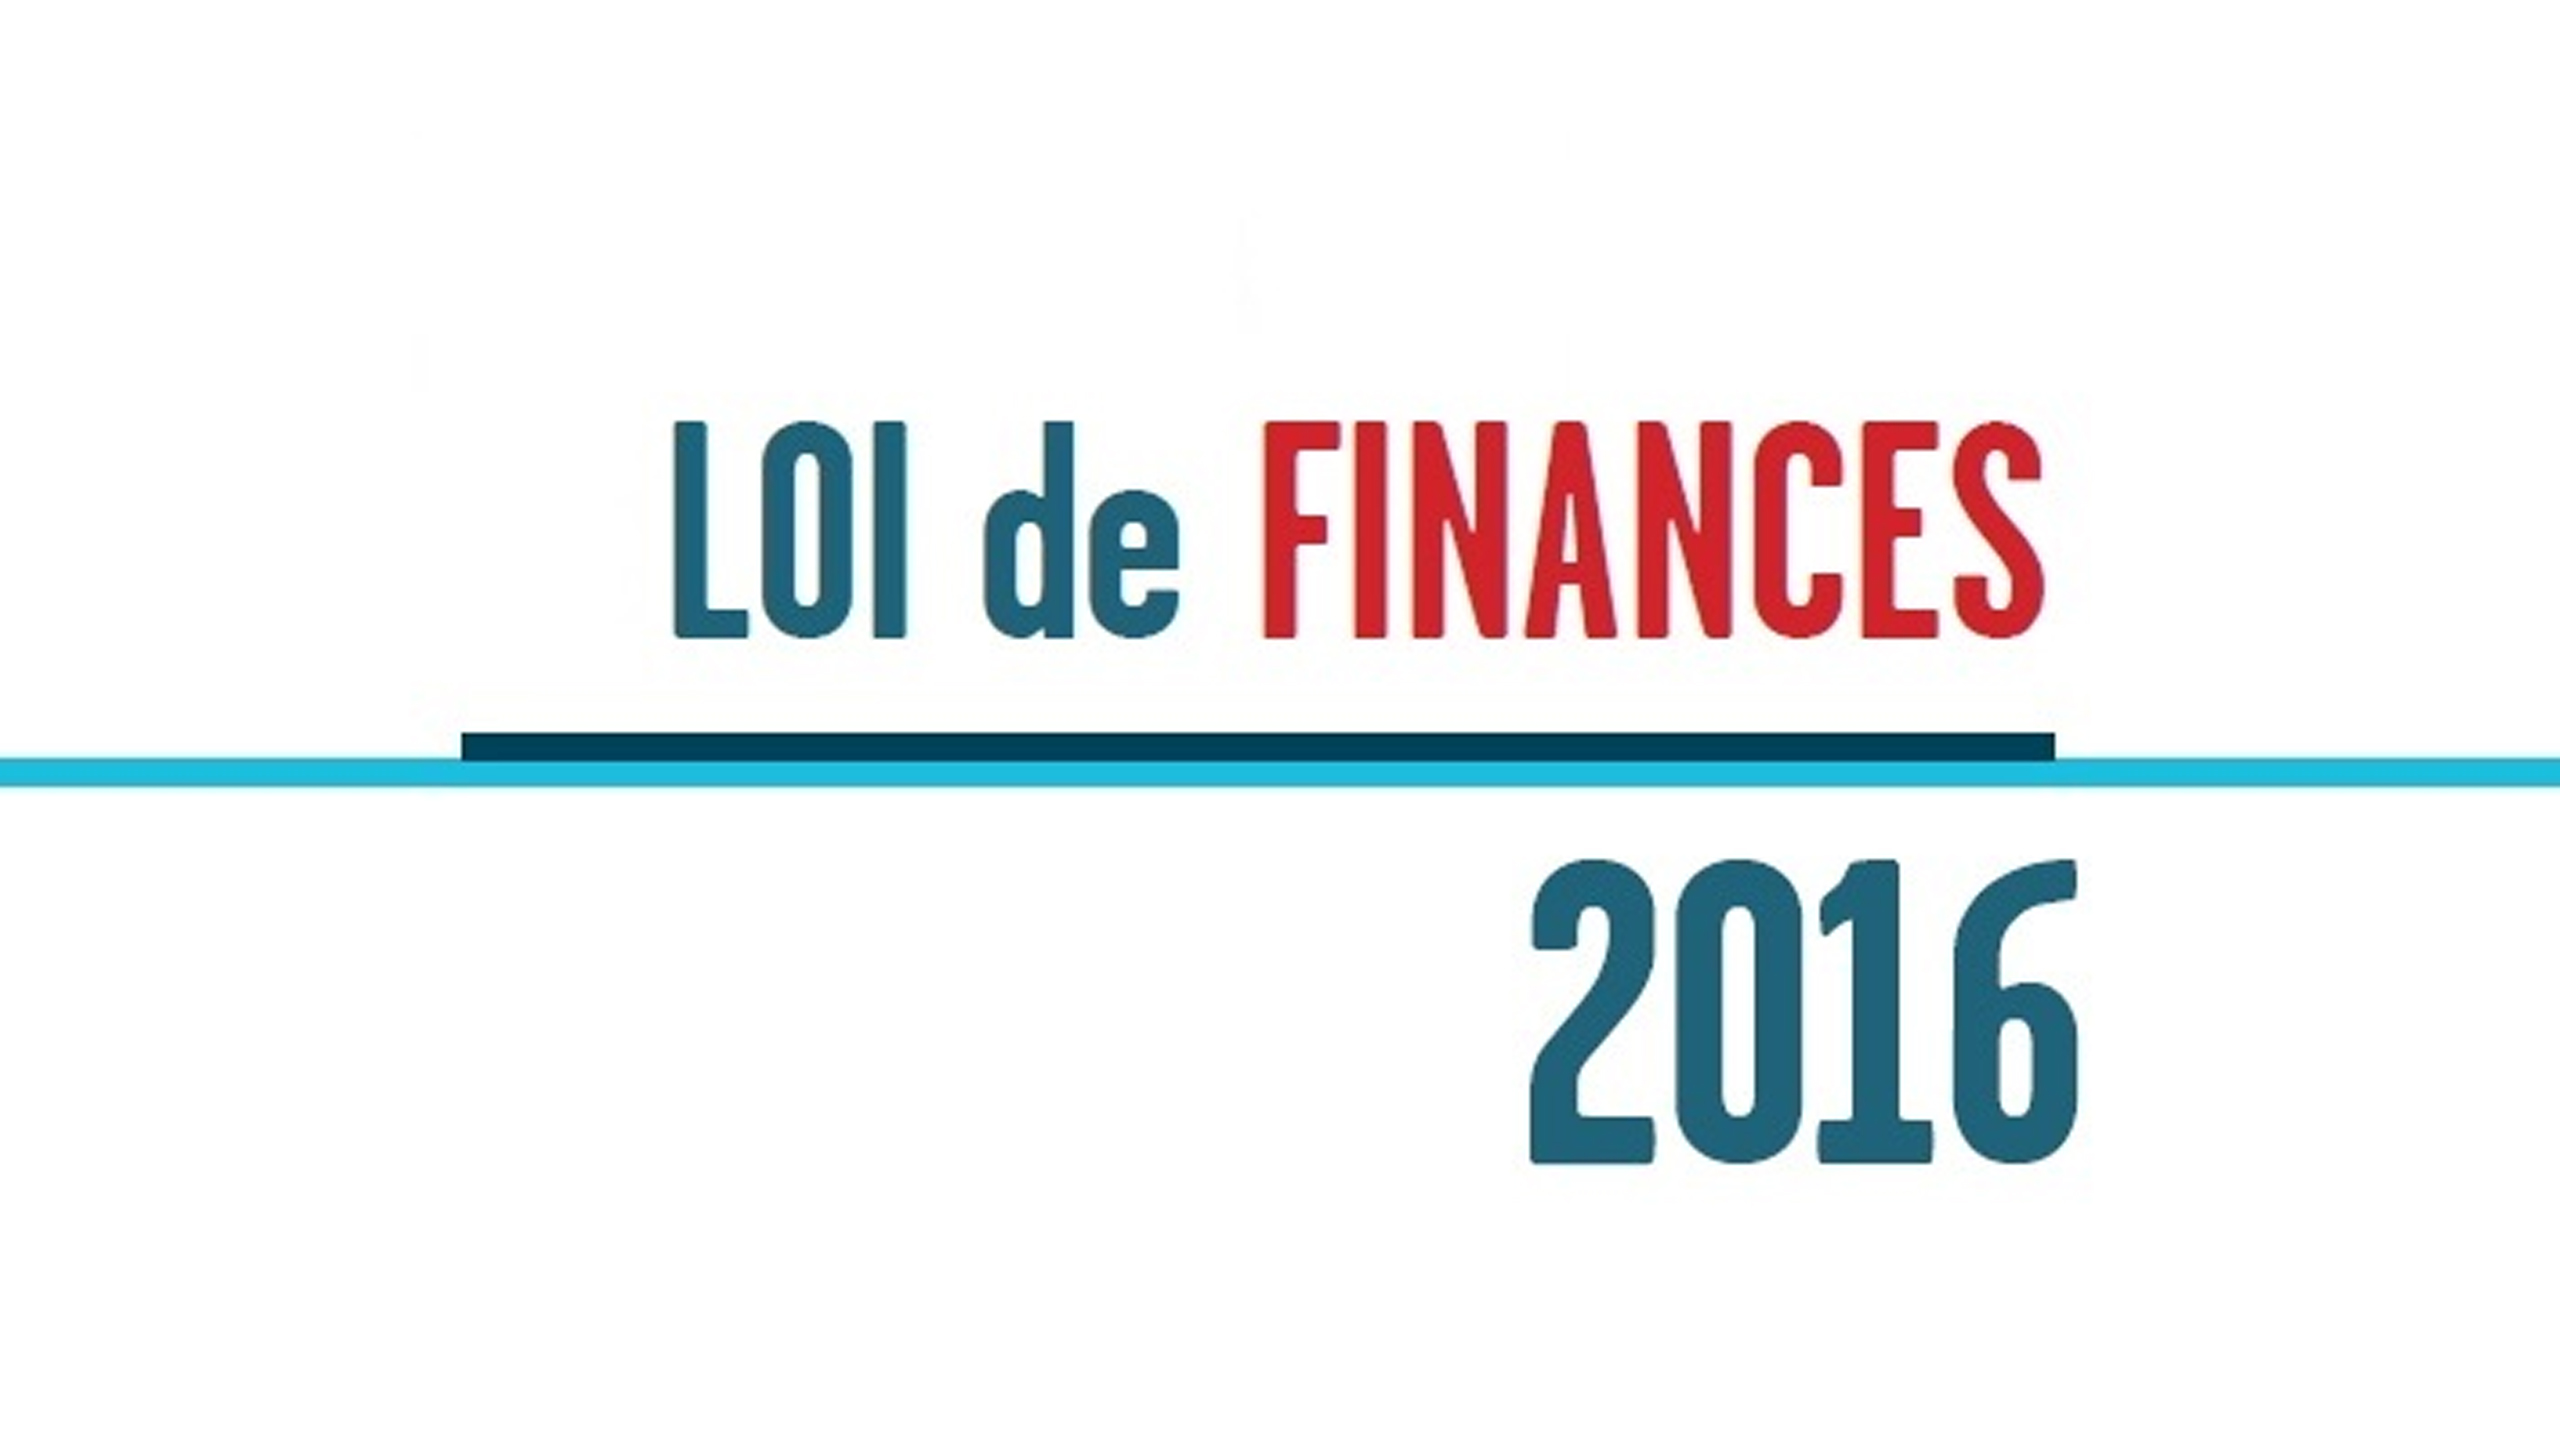 Loi de finances 2016